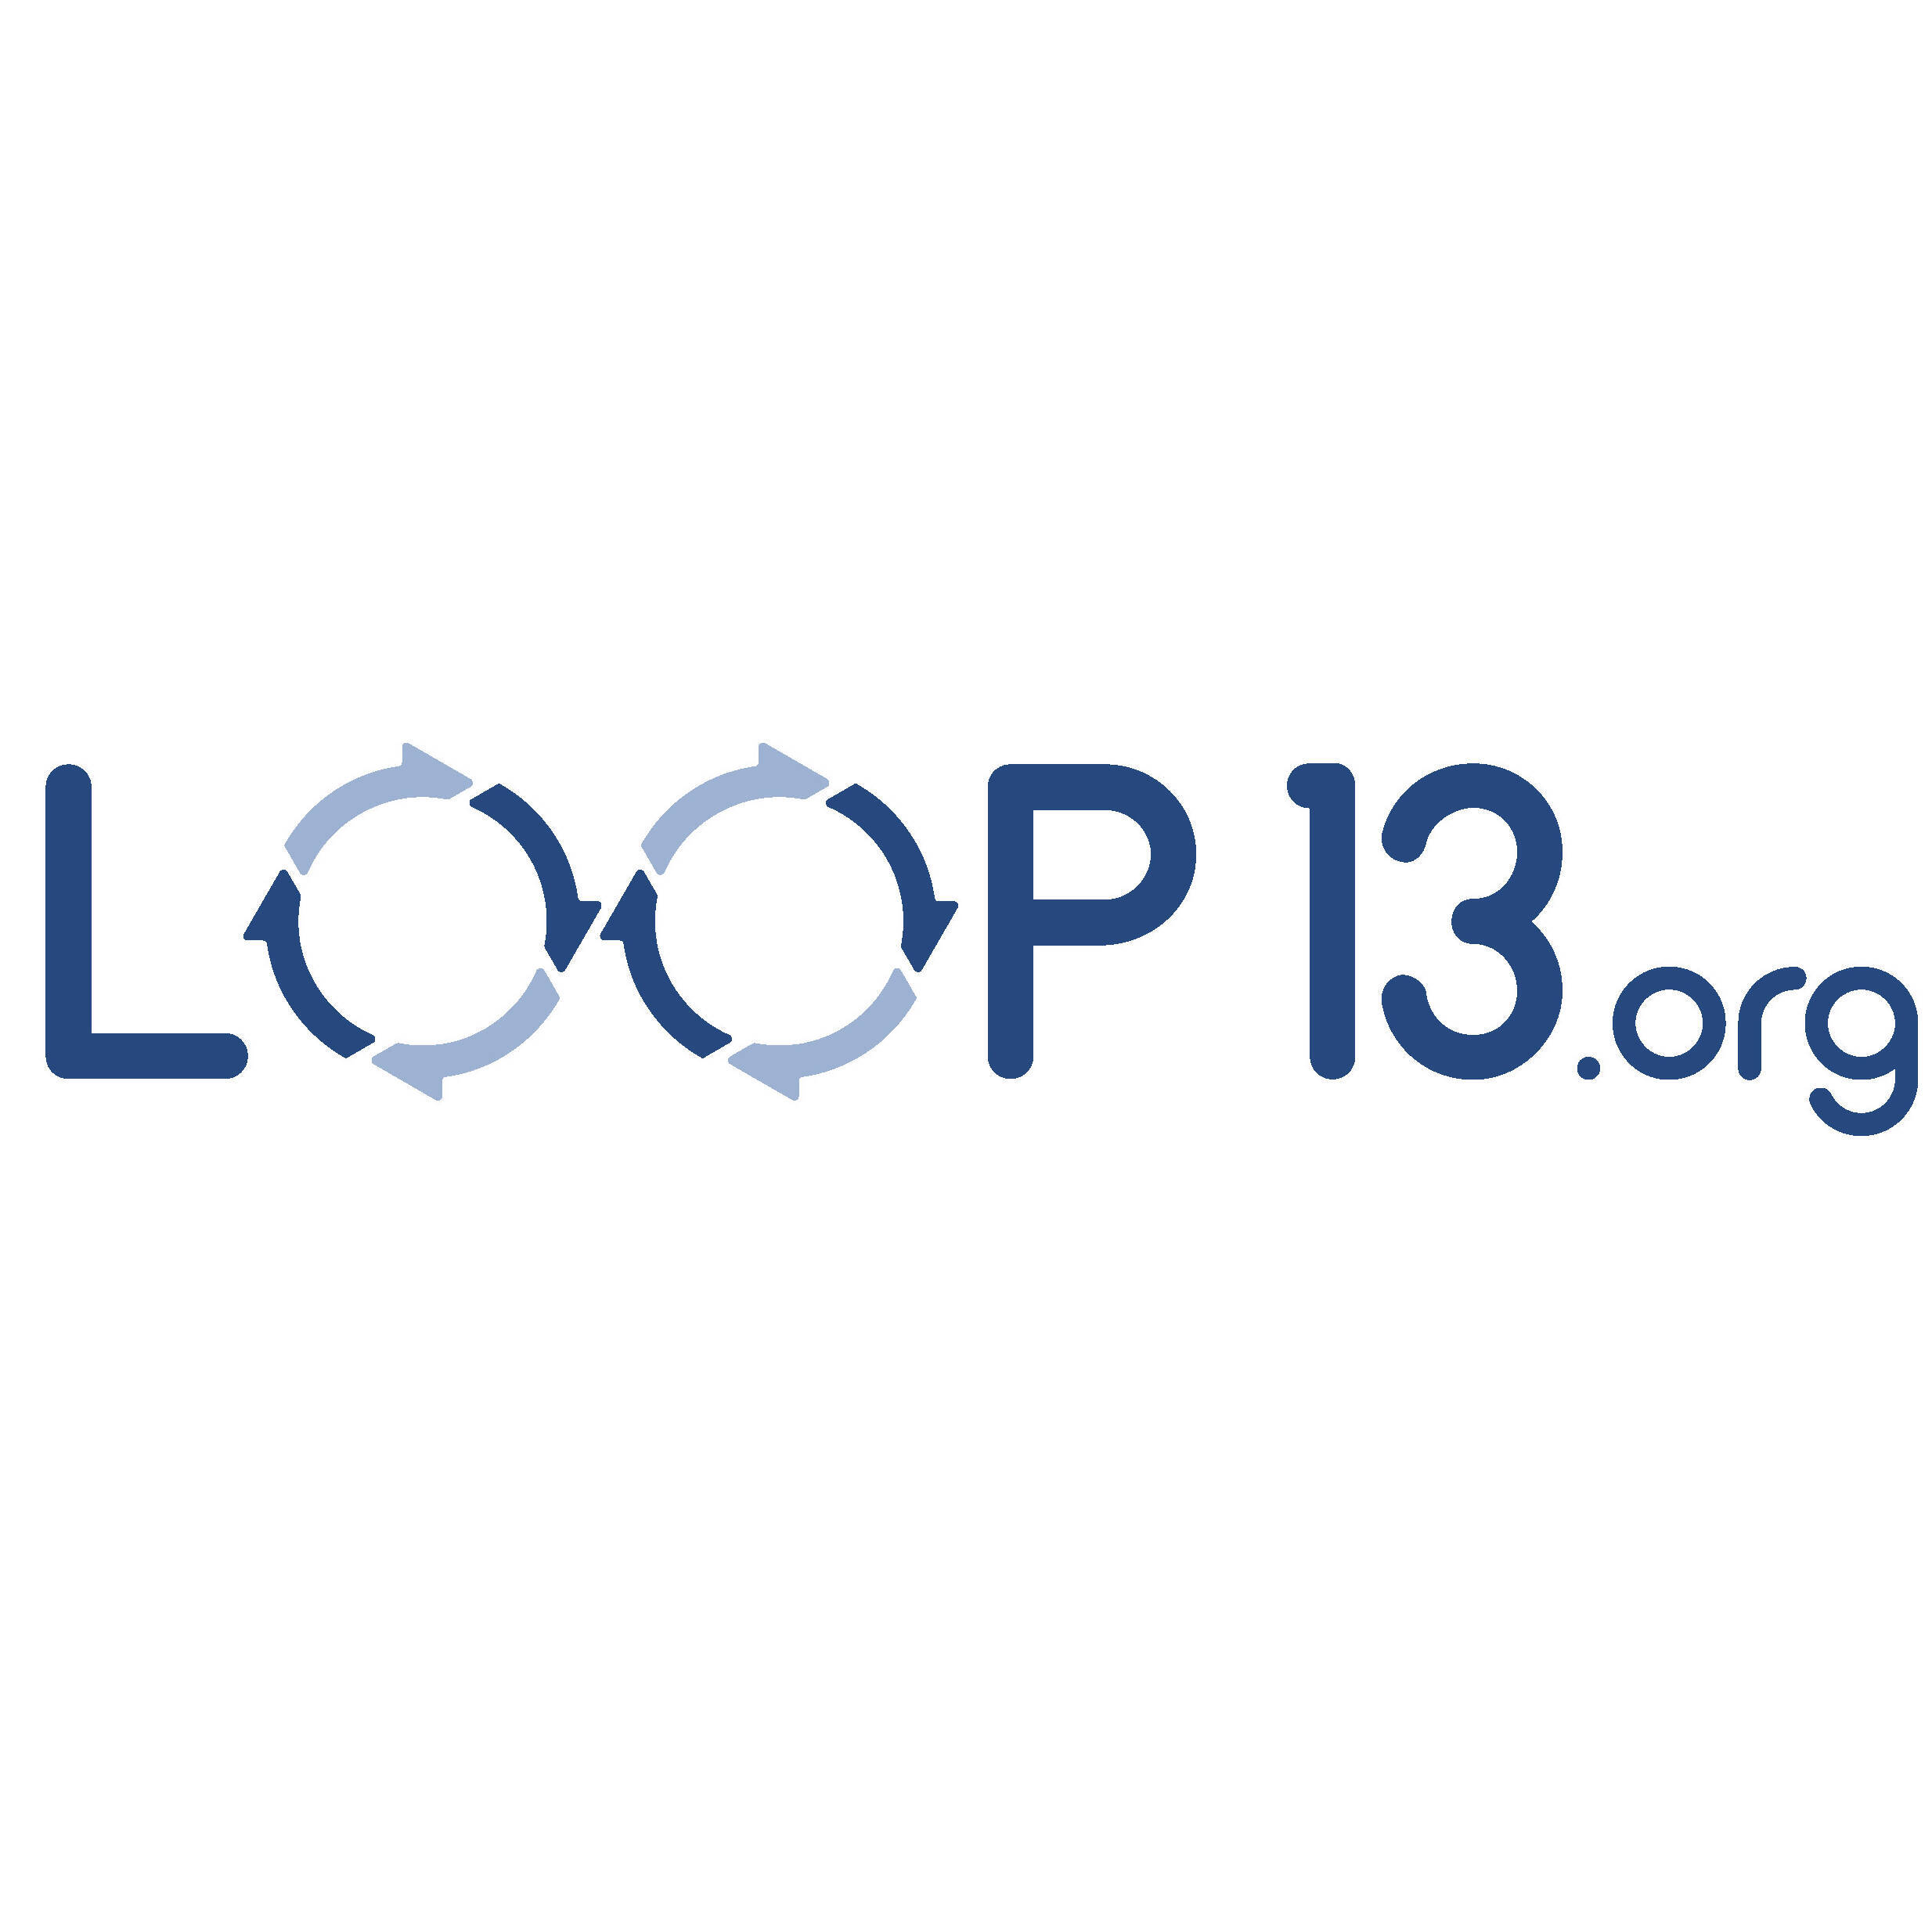 Loop13.org